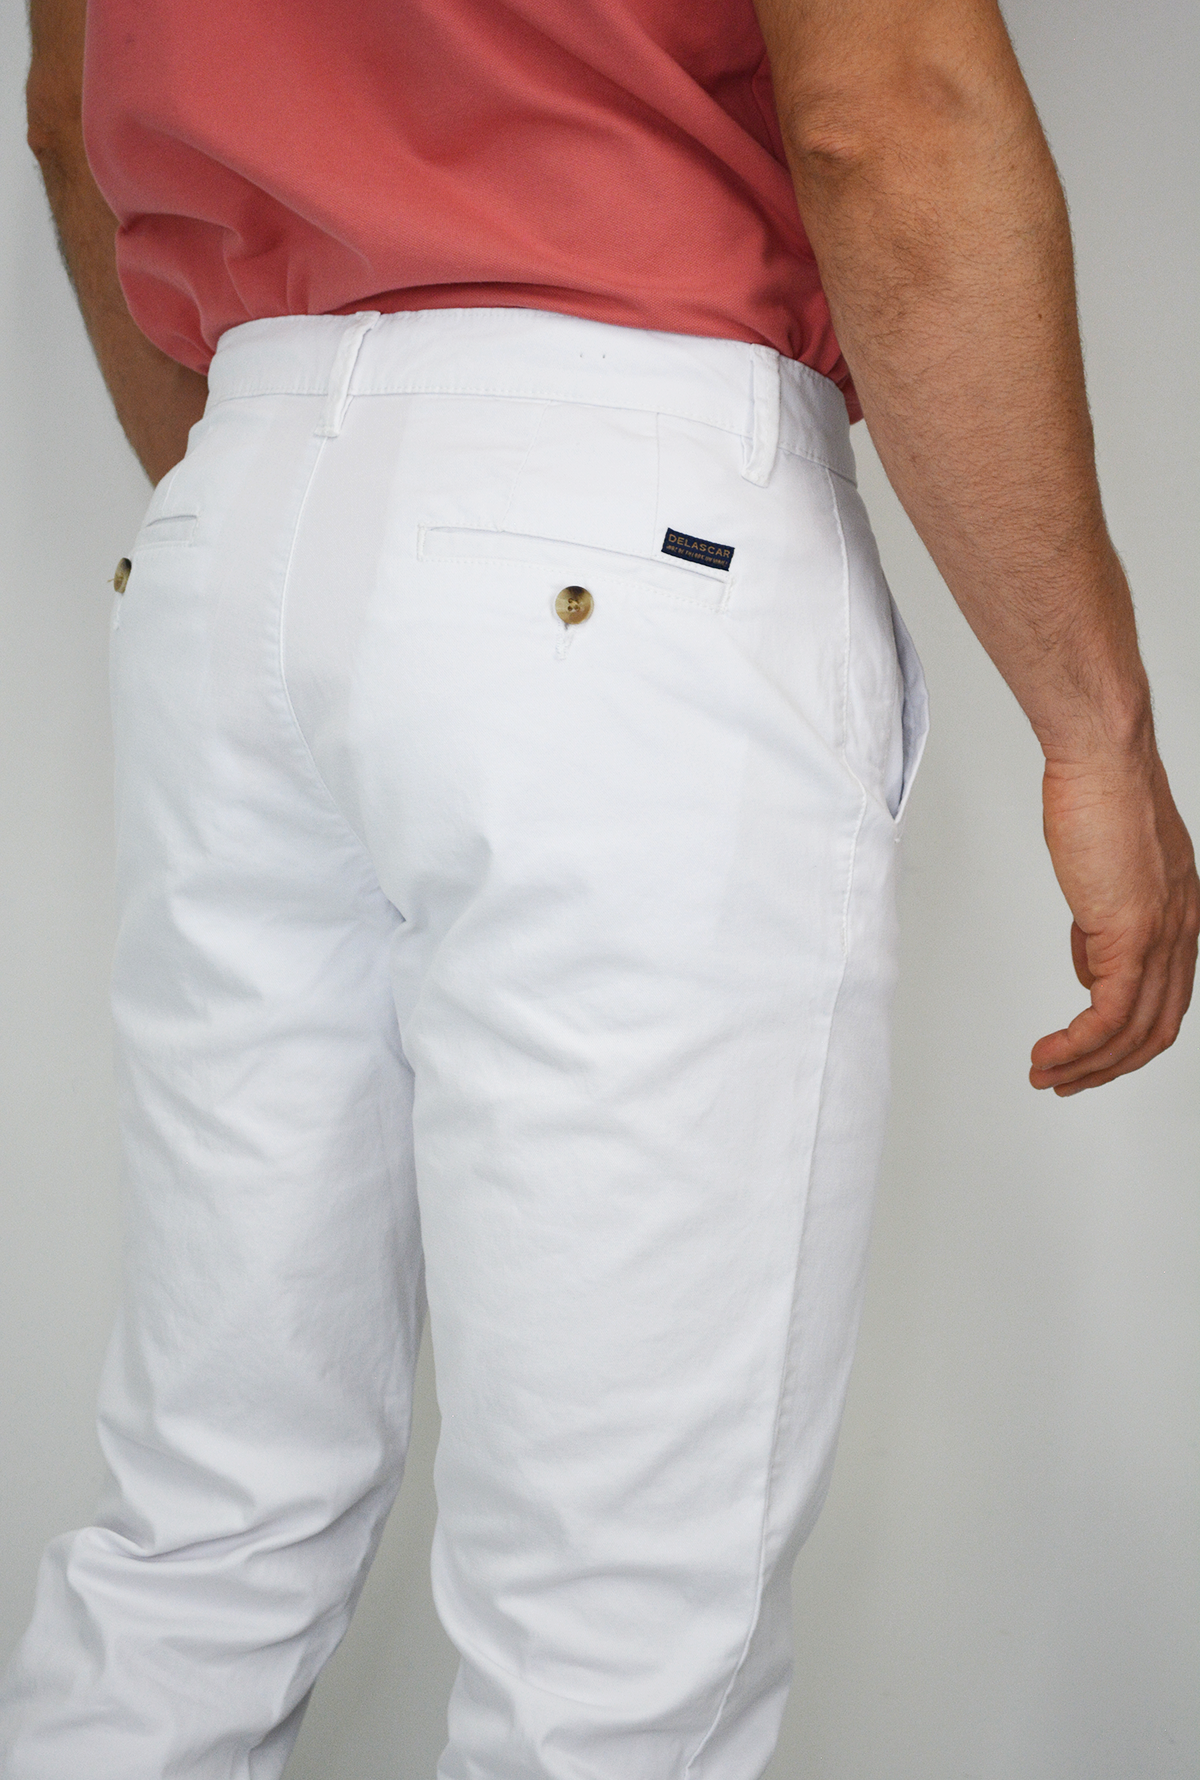 Pantalón Blanco Para Hombre DPC1029